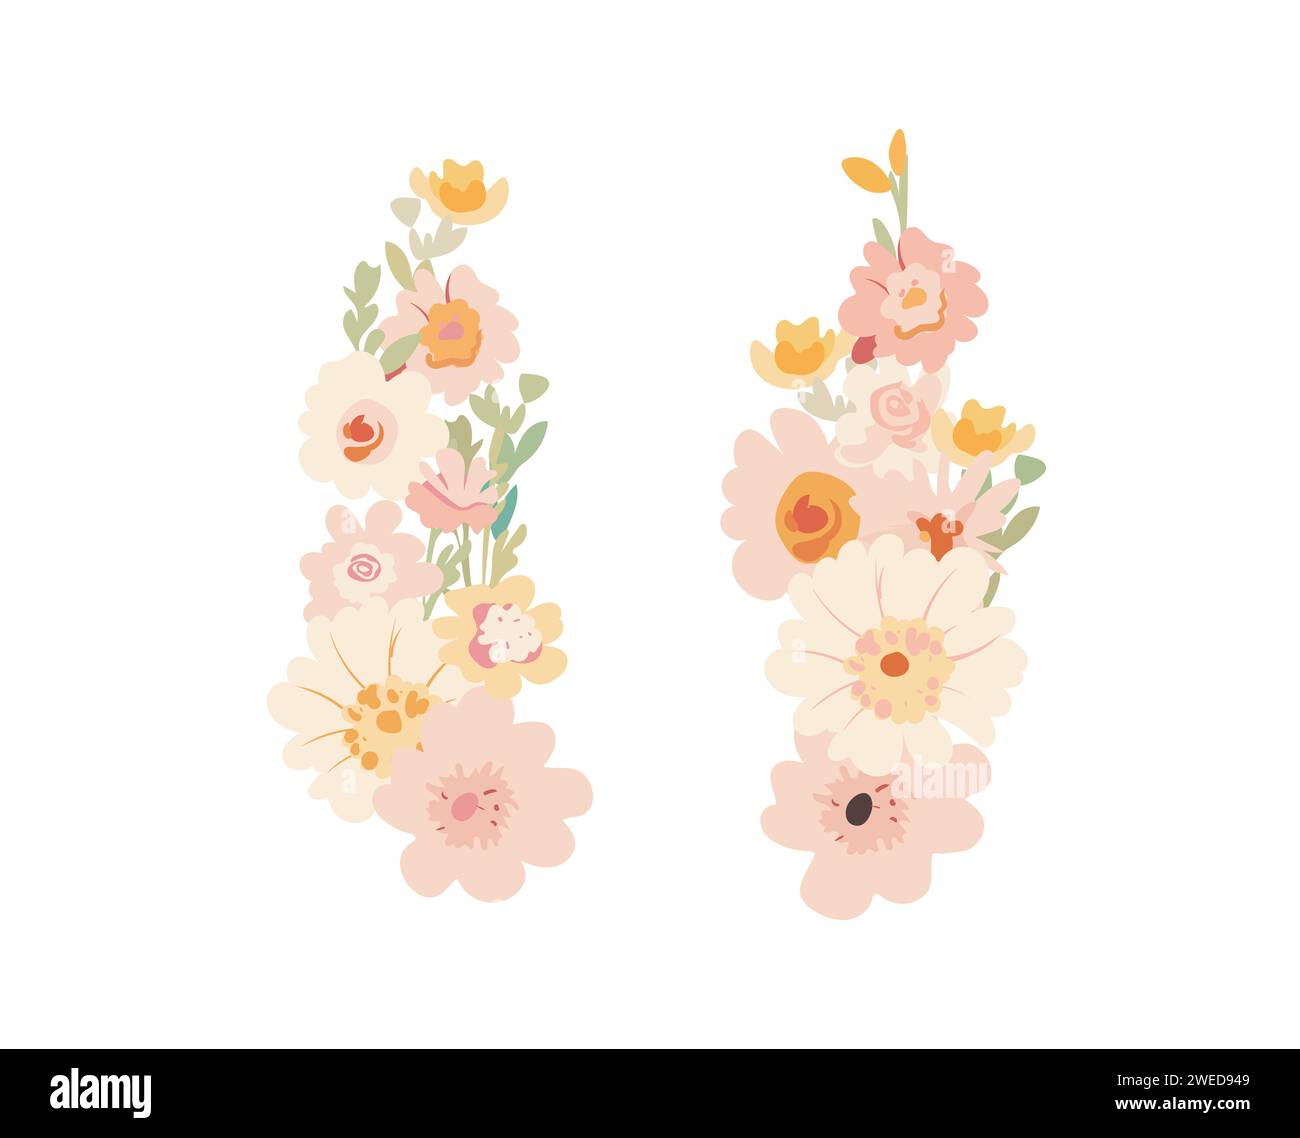 Blumenstrauß von verschiedenen zarten Frühlingsblumen mit Blättern, Satz blühender Pflanzen in Pastellfarben für Karte, dekoratives Design, flacher Karikaturvektor Stock Vektor